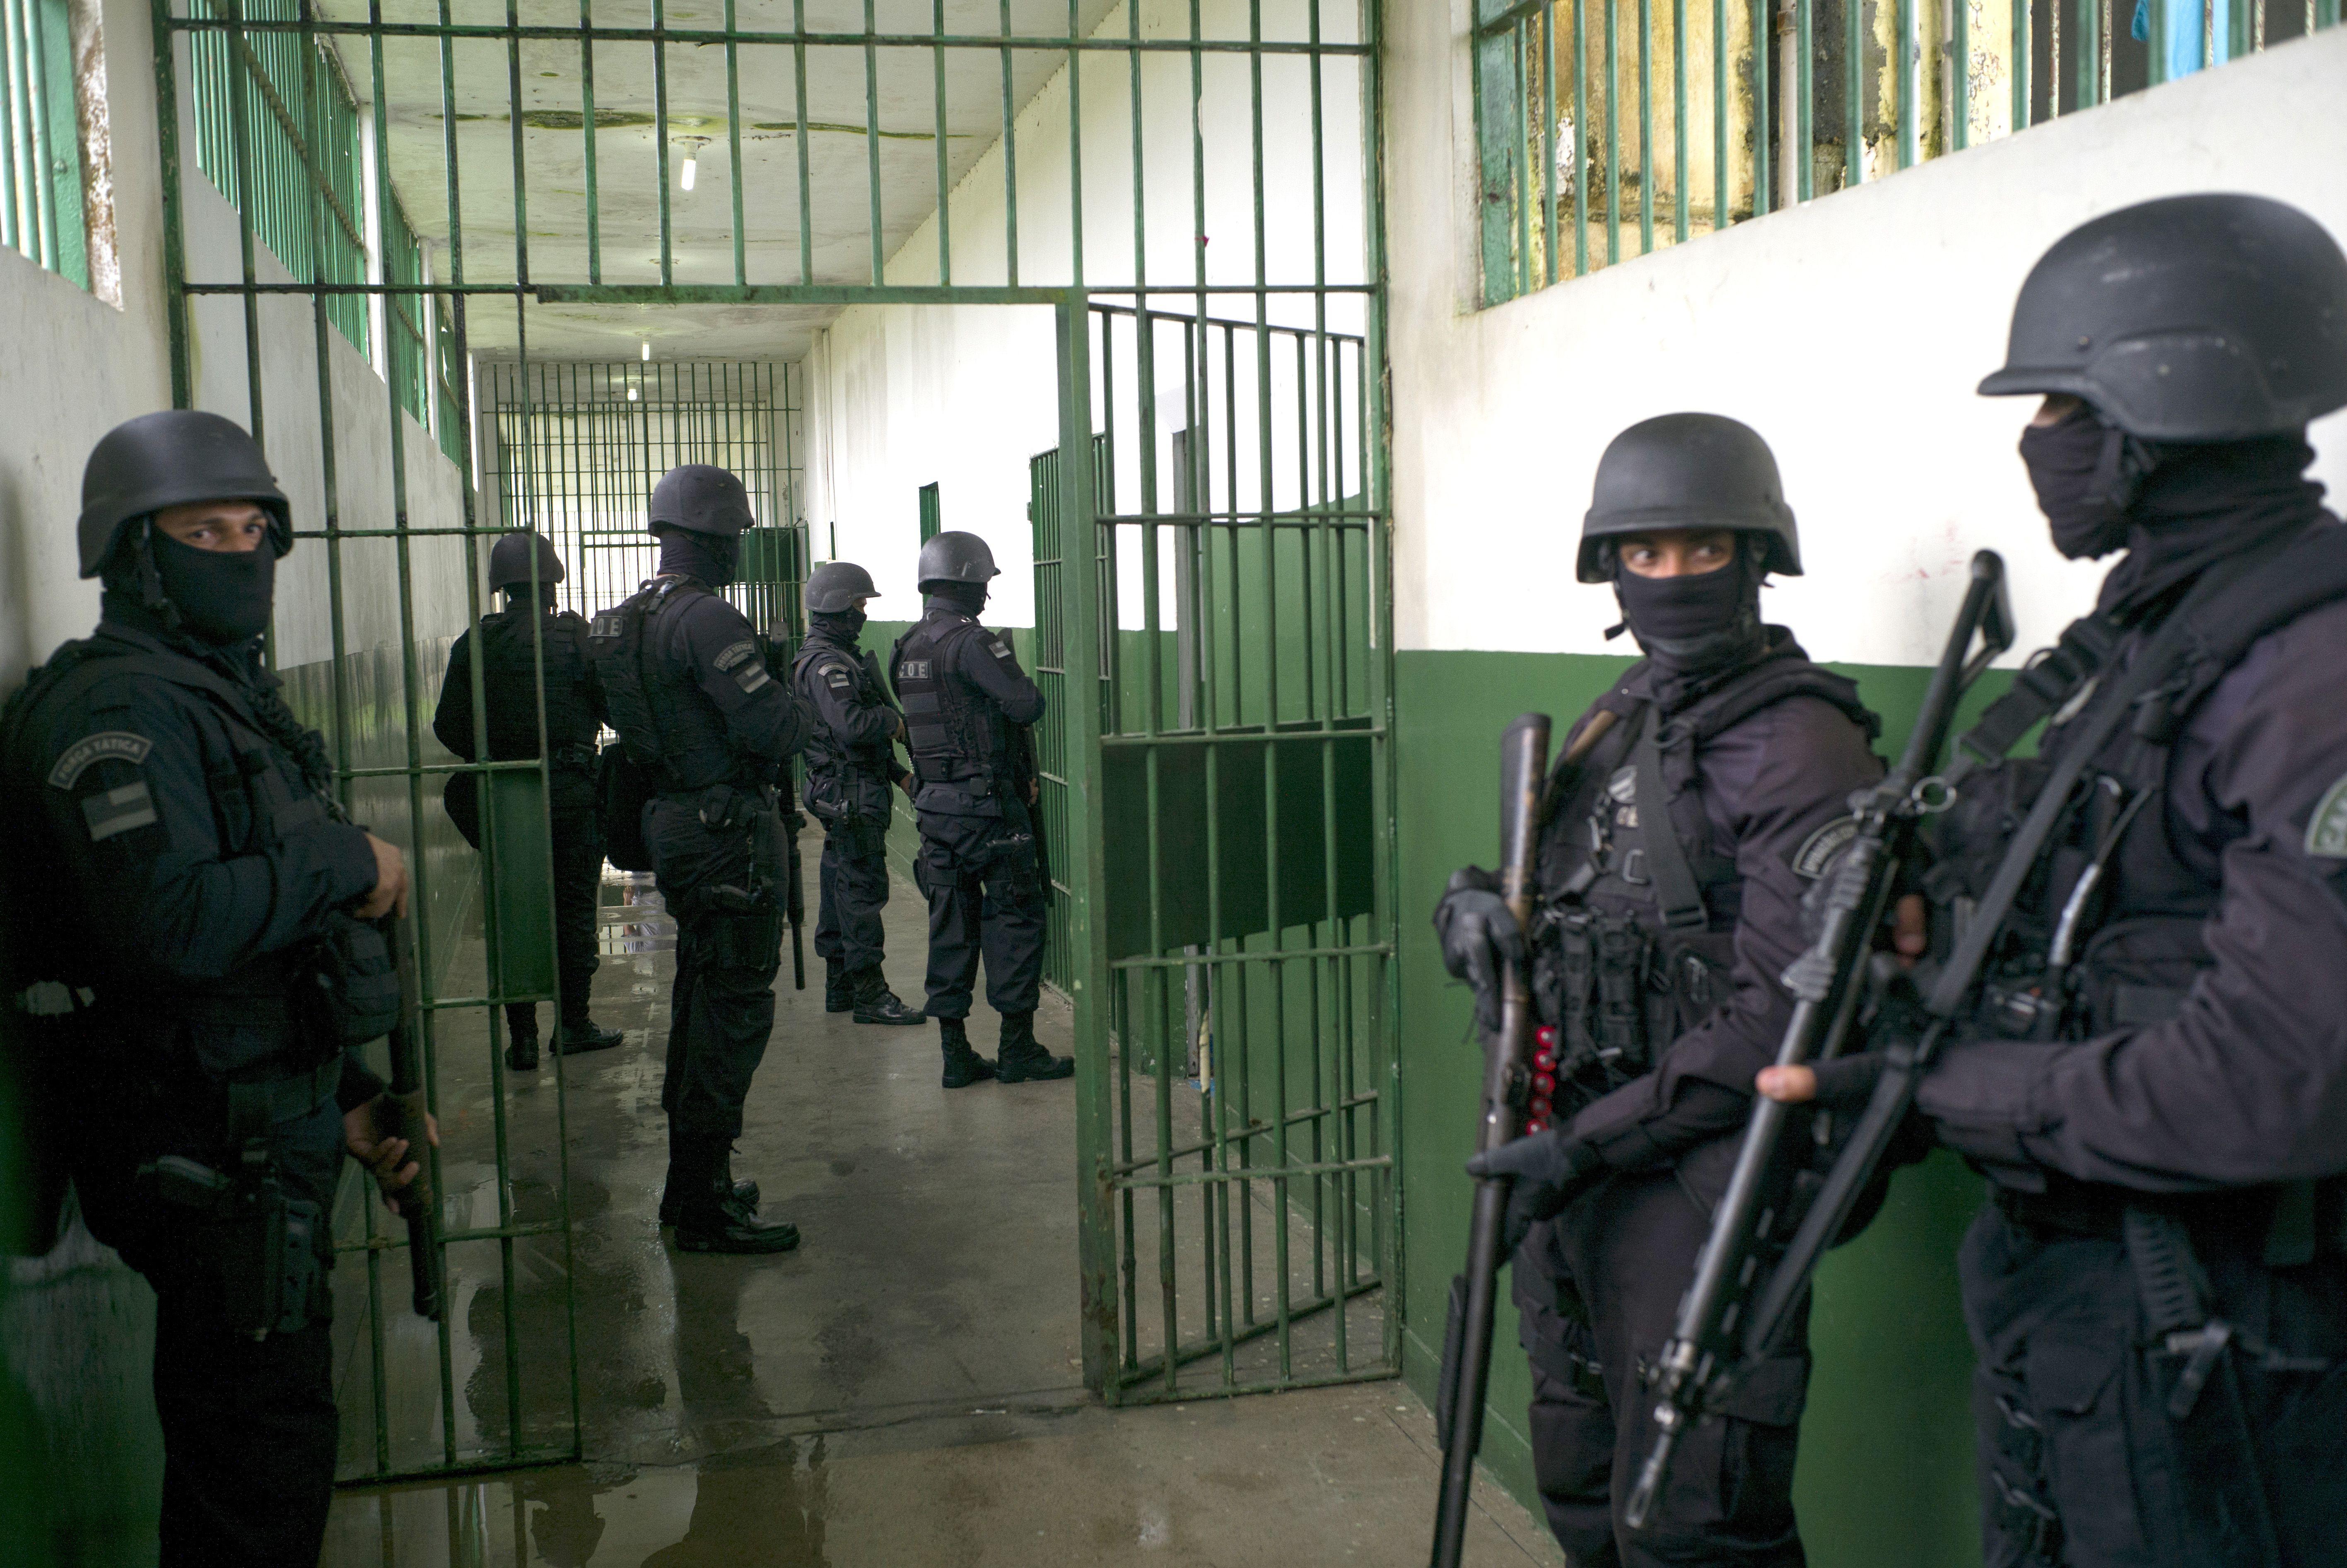 Gunmen storm Brazil prison, 92 inmates escape